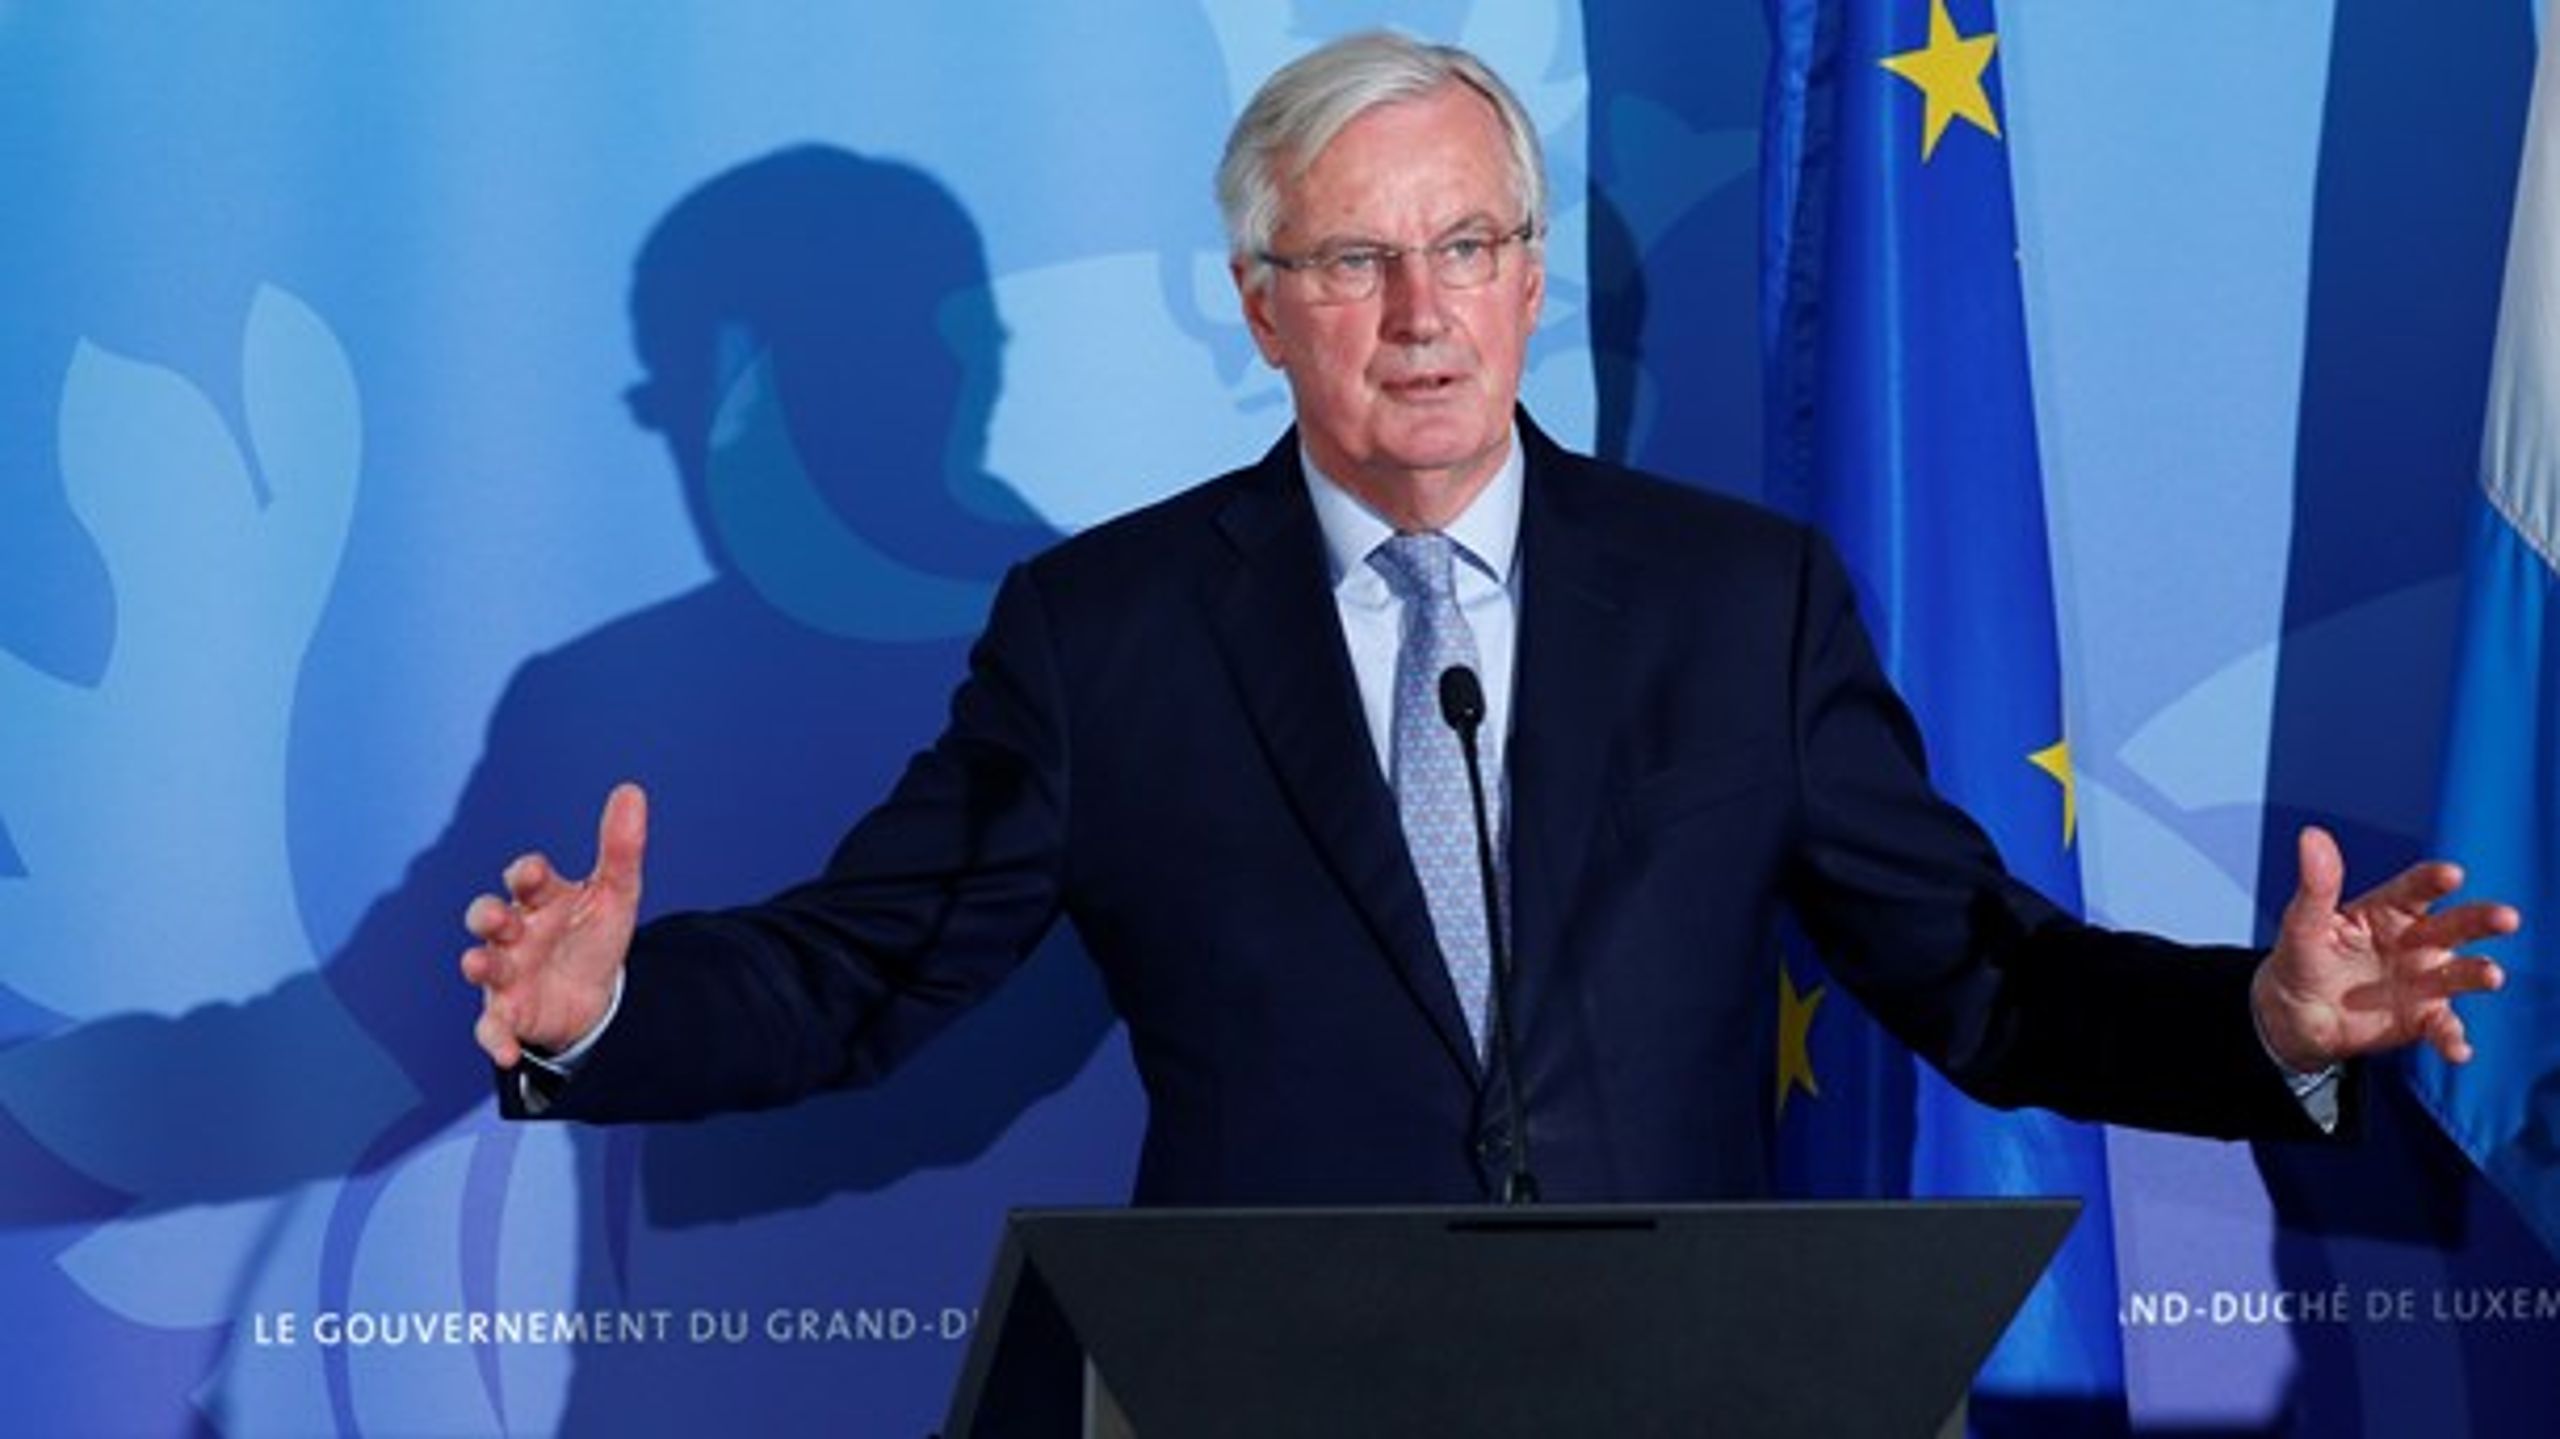 EU's medlemslande forventes i denne uge at give Michel Barnier mandat til at starte forhandlingerne med Storbritannien om det fremtidige forhold efter Brexit.